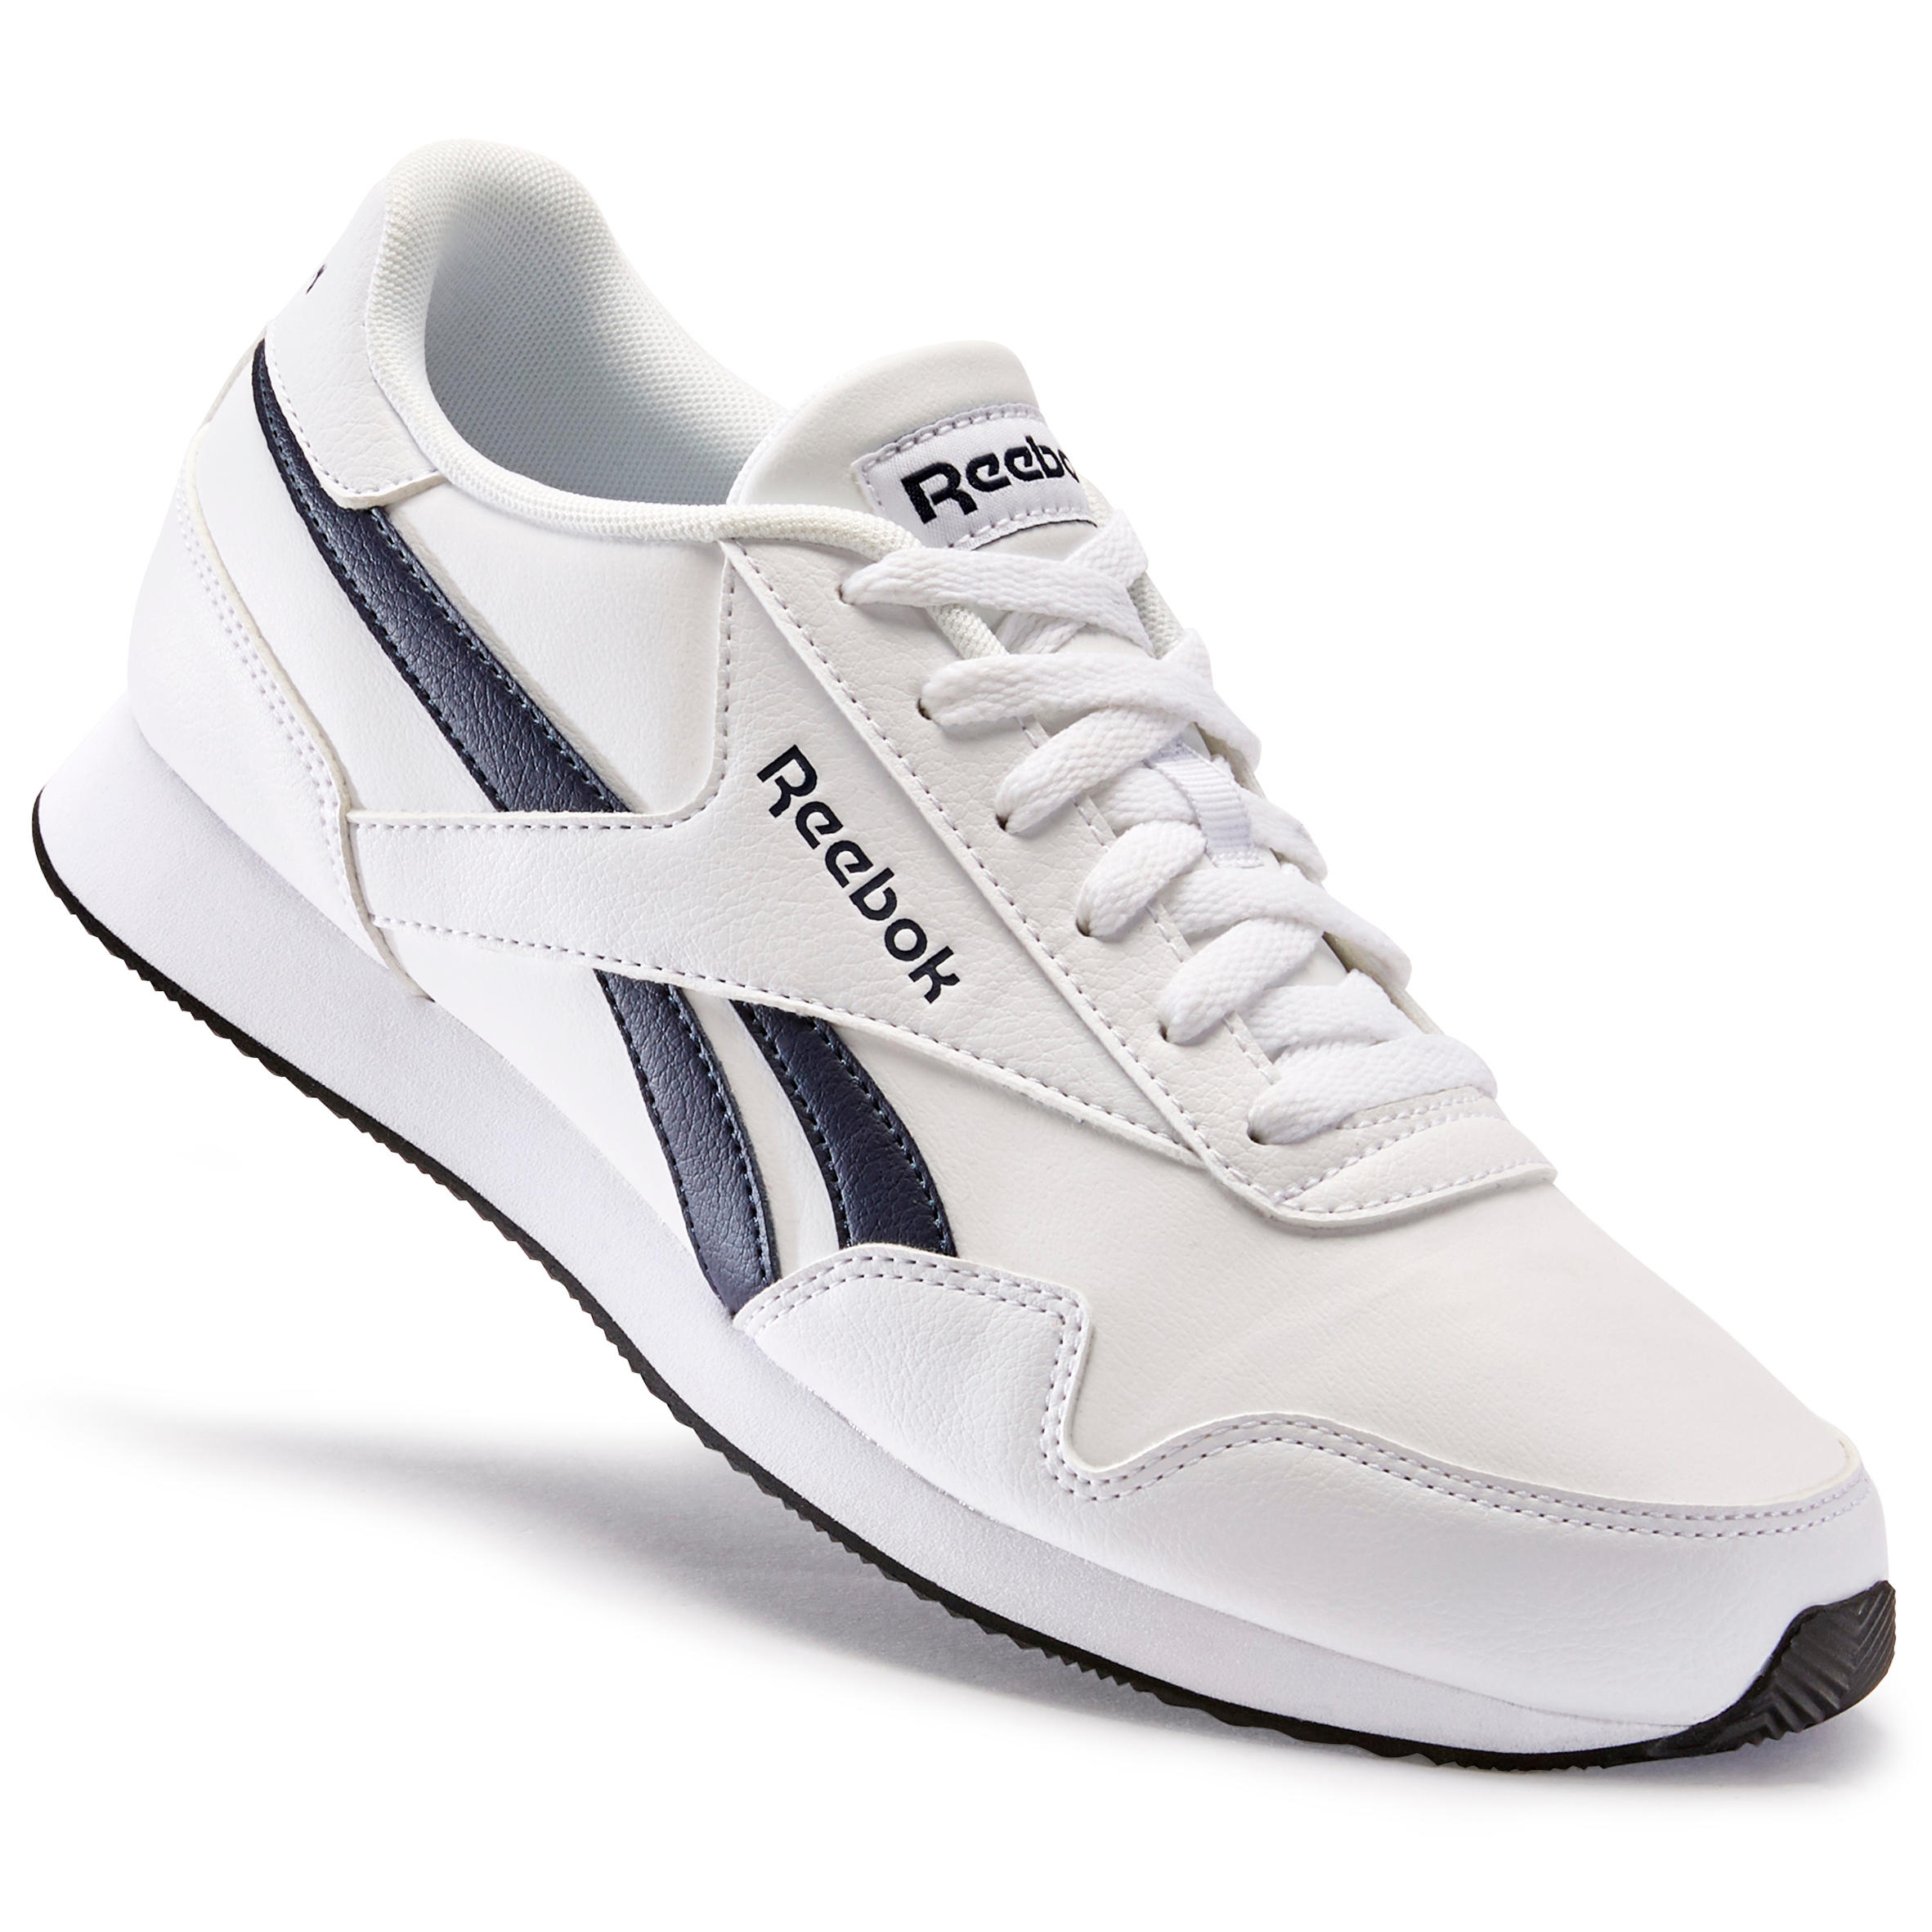 Reebok Men's Urban Walking Shoes Royal Classic - White